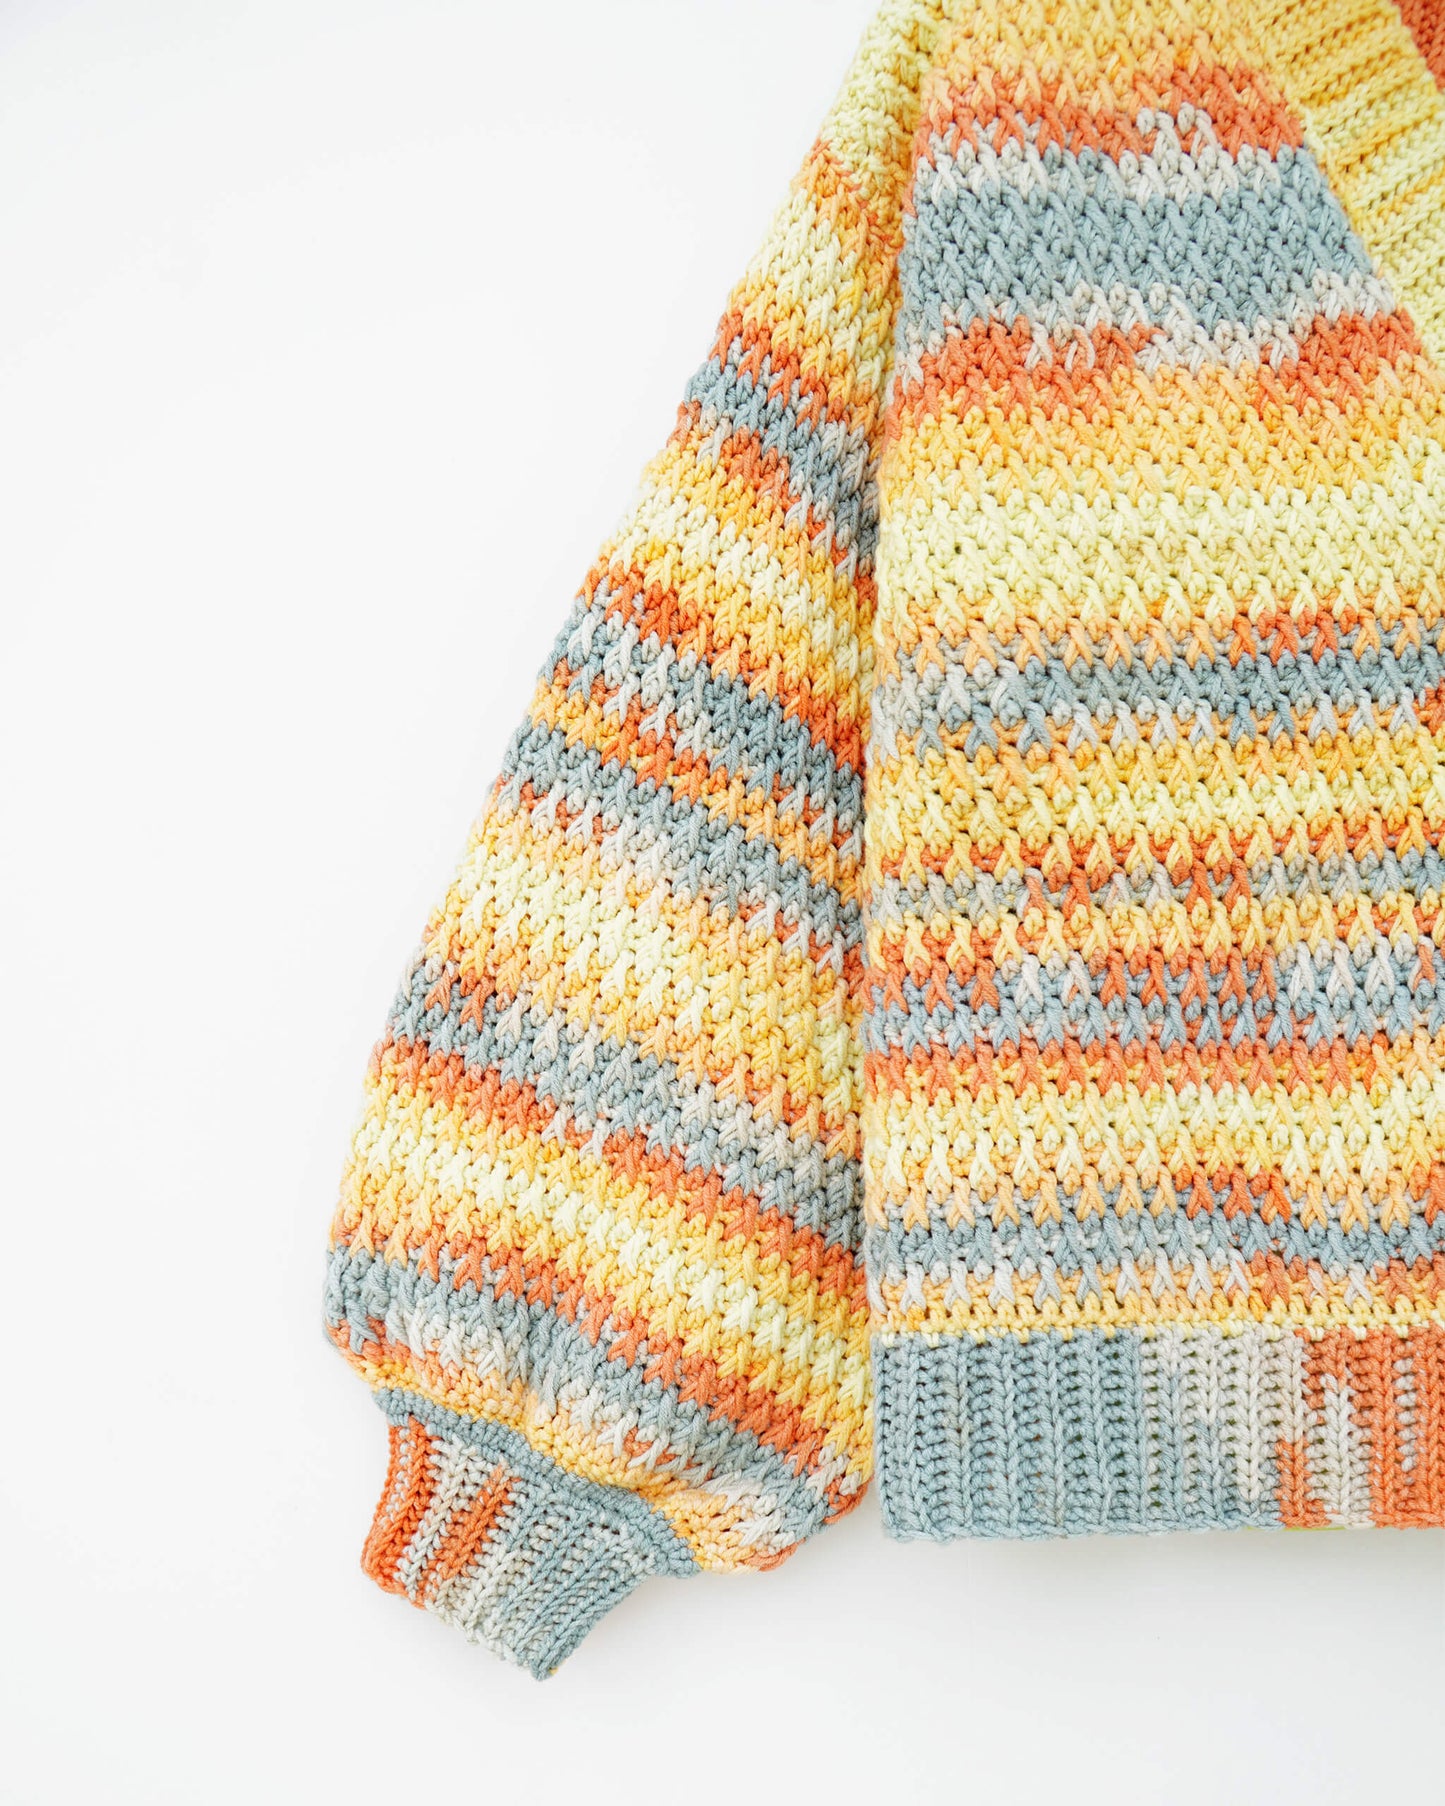 Kids' Sweater No.9 | Easy crochet pattern